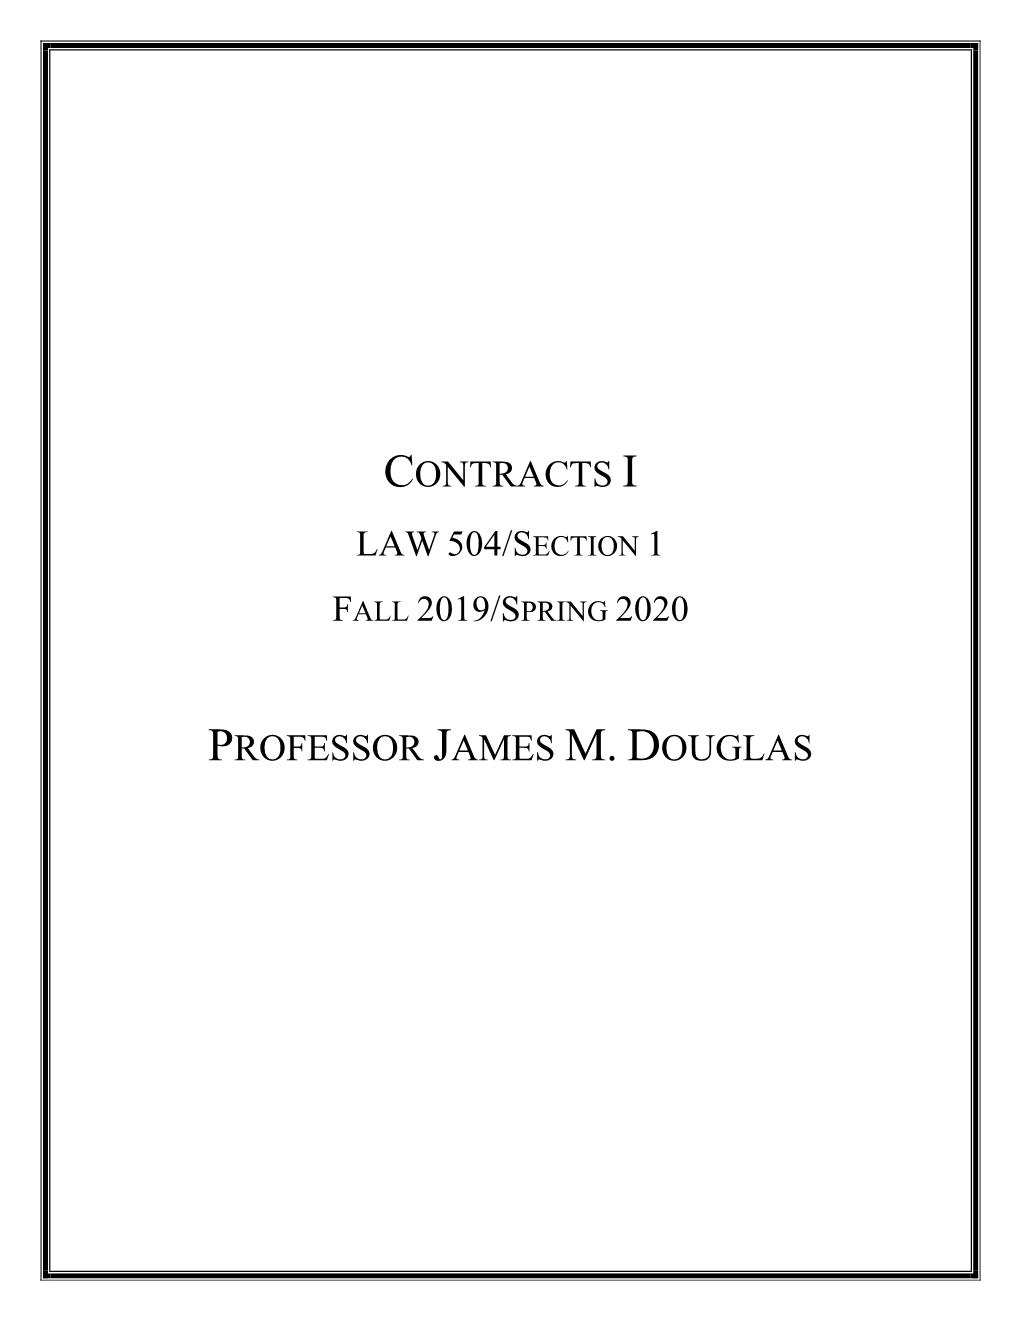 Contracts I Professor James M. Douglas